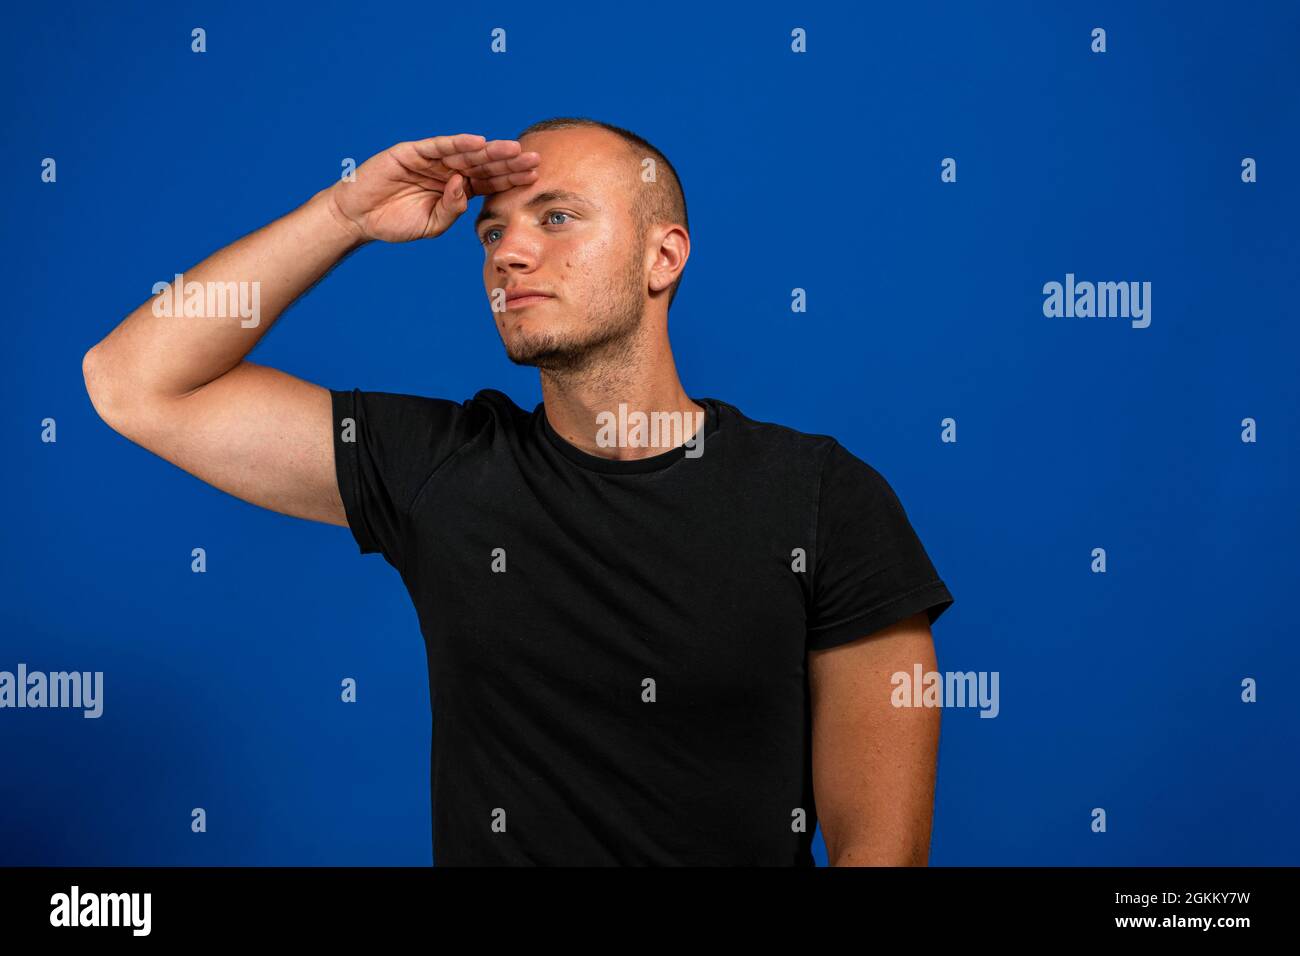 Der junge Mann begrüßt die Kamera mit einem militärischen Gruß in einem Akt der Ehre und des Patriotismus und zeigt Respekt vor der blauen Wand Stockfoto